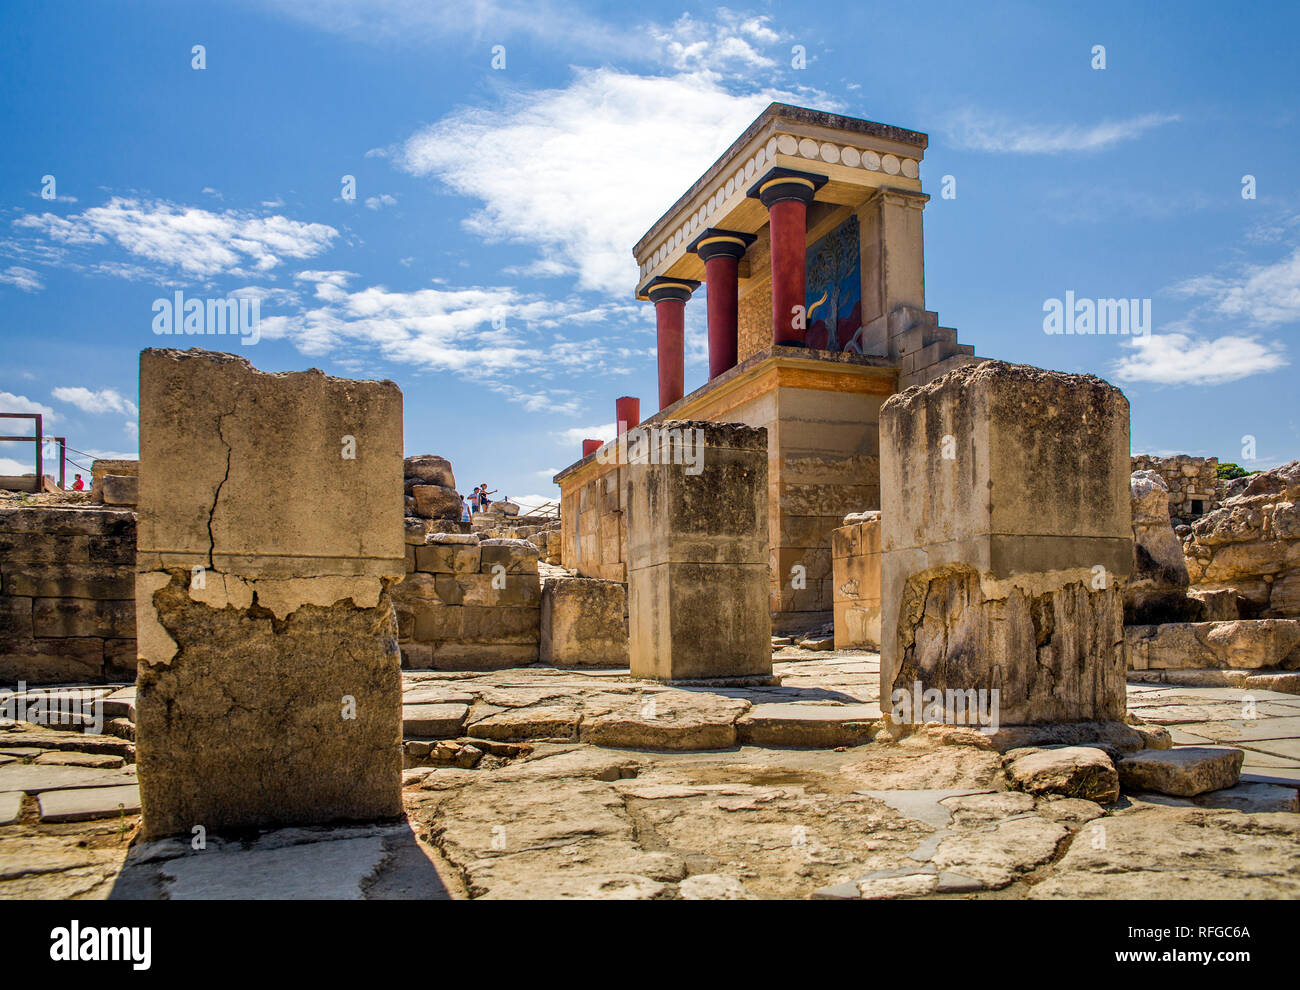 Les colonnes rouges du palais de Knossos. Palais de Knossos sur l'île de Crète en Grèce. D'anciennes ruines de l'incendie une partie du Musée Archéologique de Banque D'Images